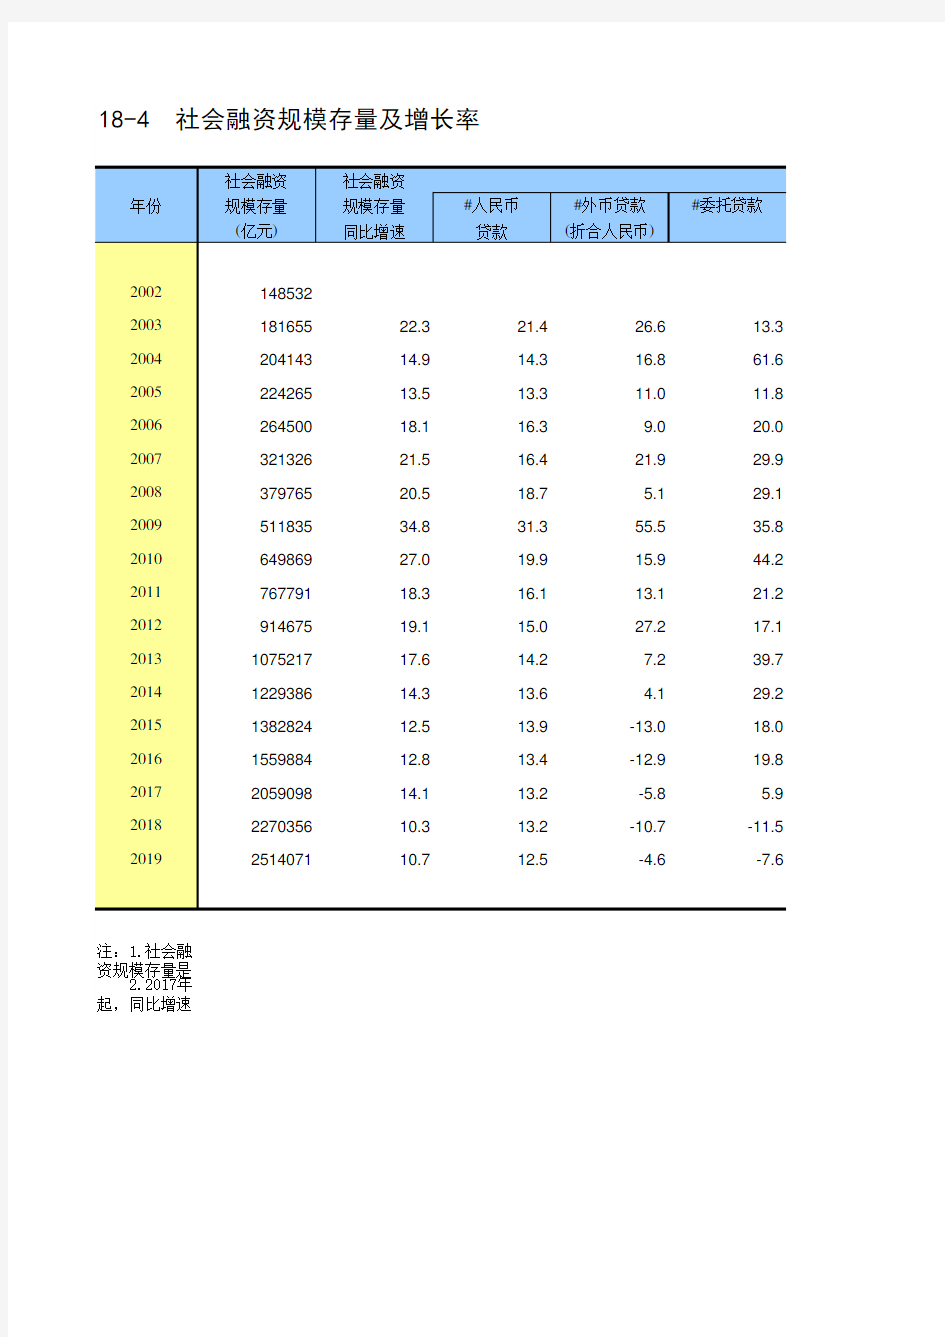 中国统计年鉴2020全国社会经济发展指标：18-4  社会融资规模存量及增长率